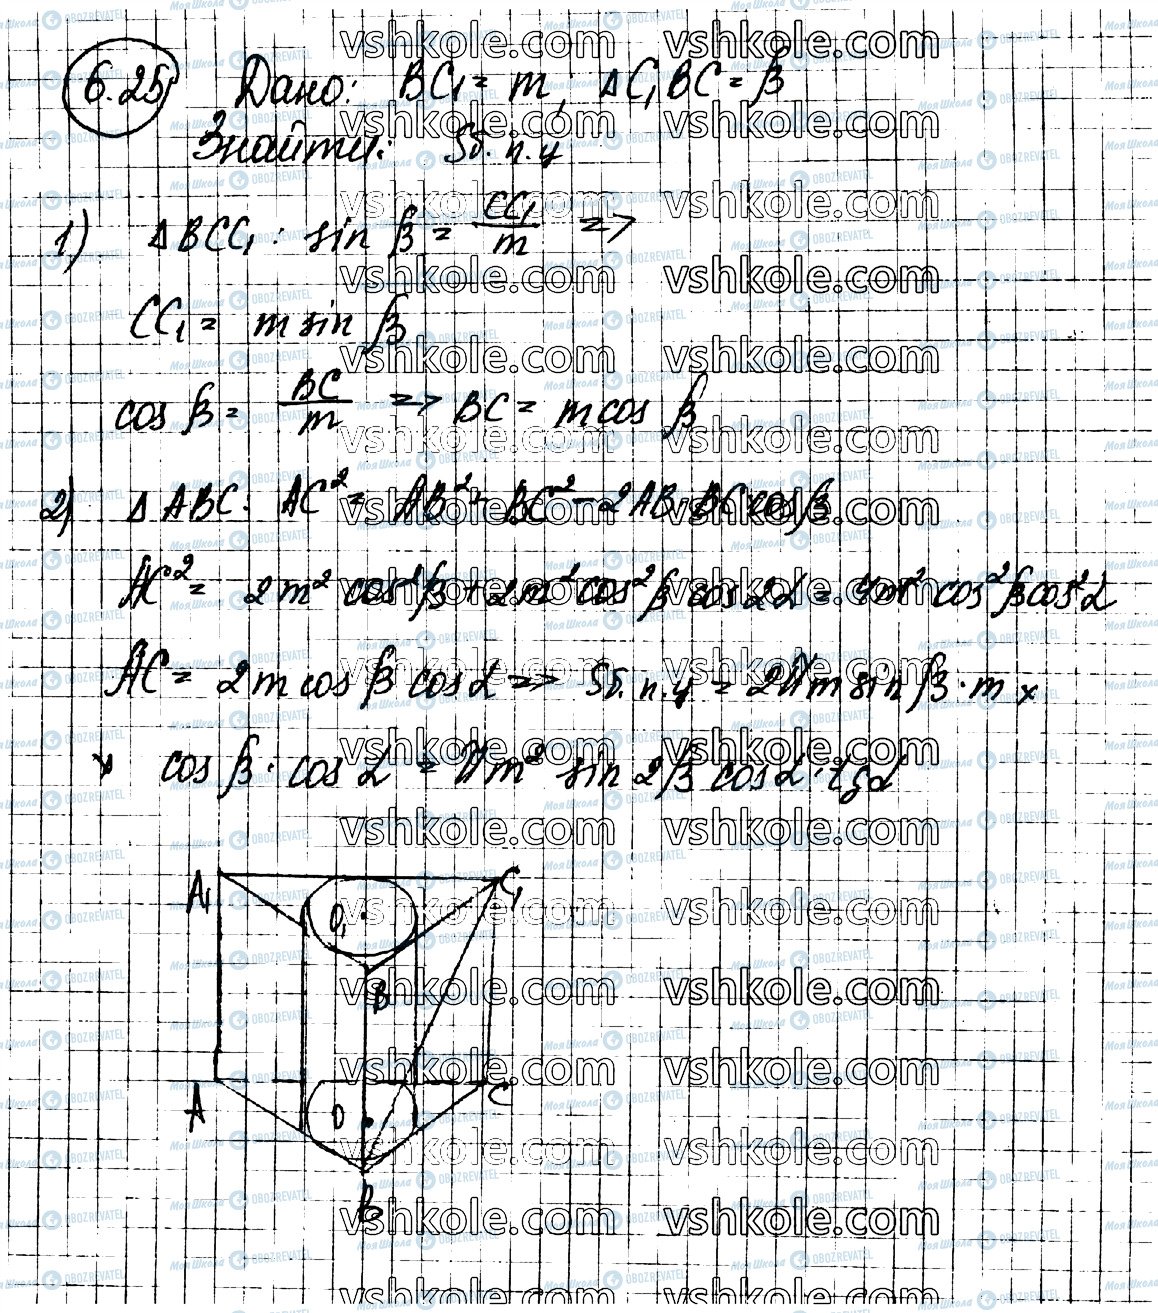 ГДЗ Геометрия 11 класс страница 25